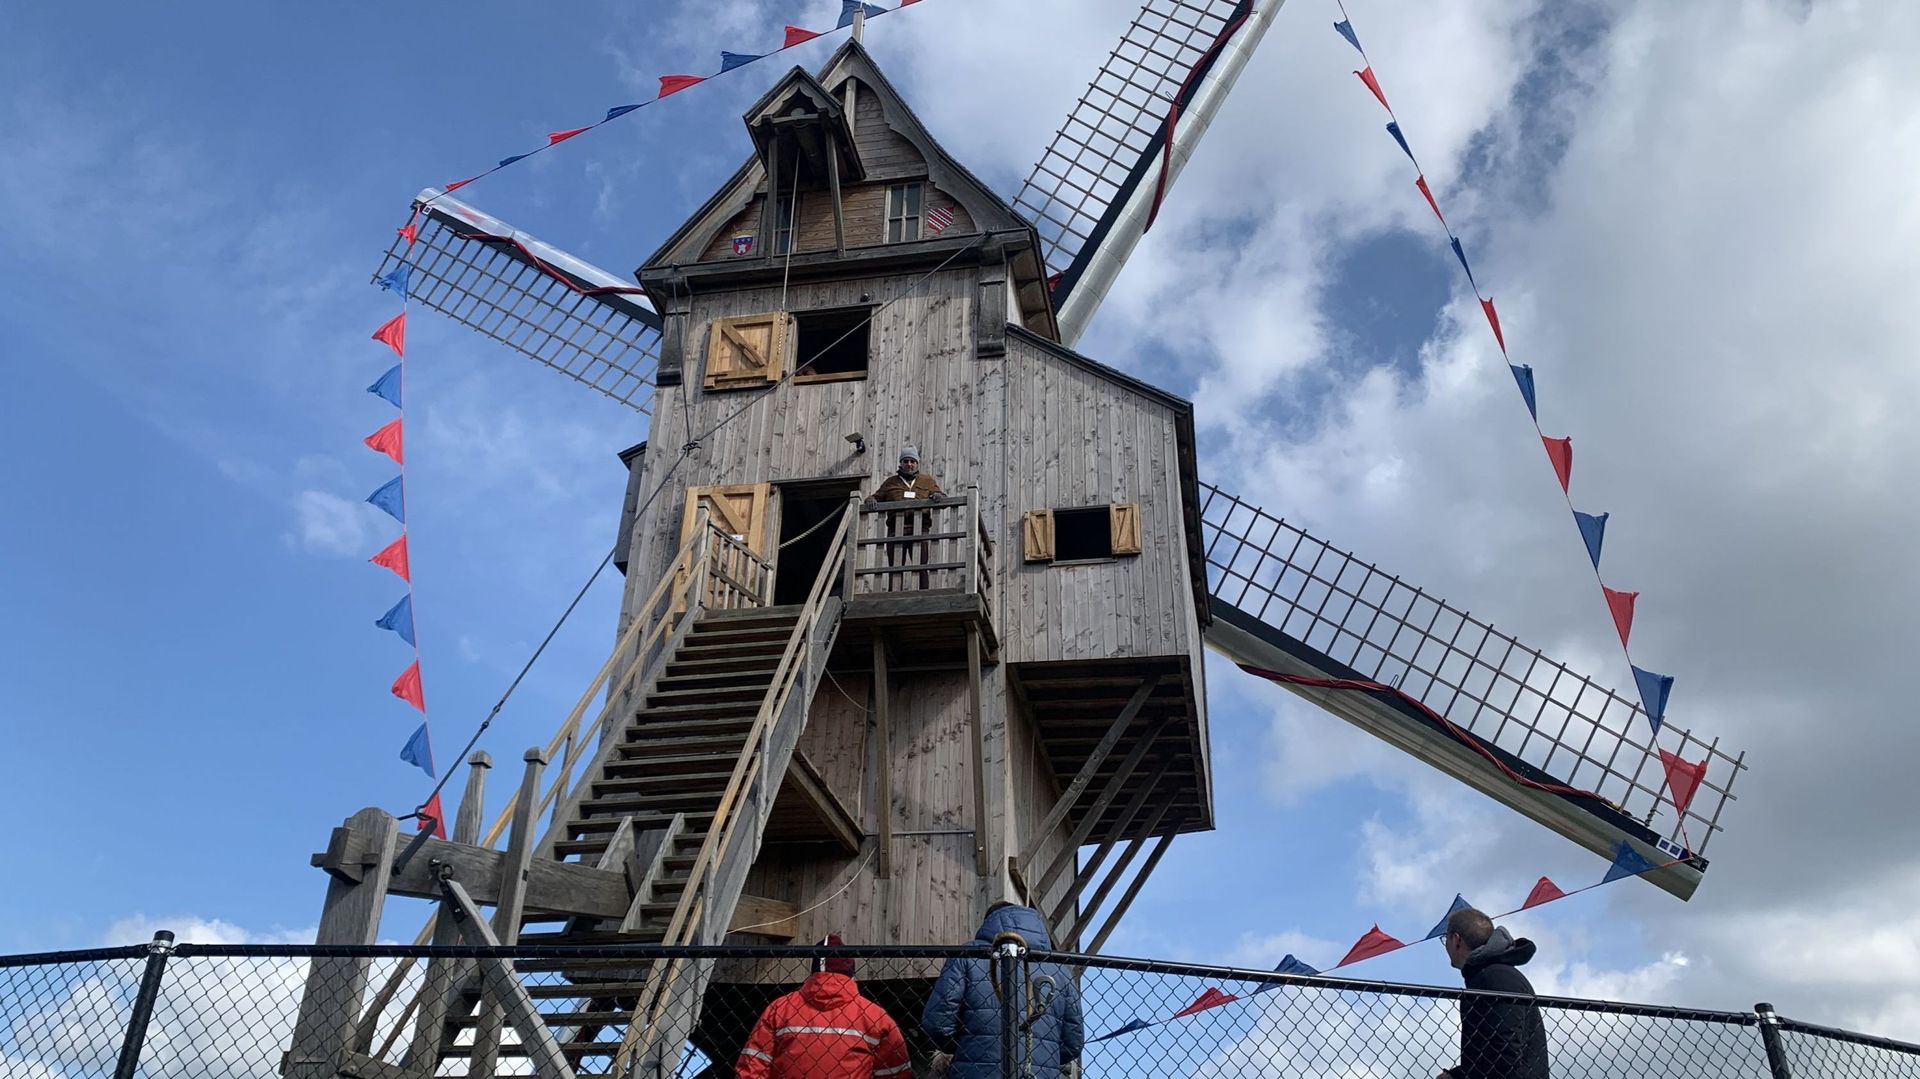 Le moulin est décoré à l'occasion de son inauguration pour la plus grande fierté des habitants.